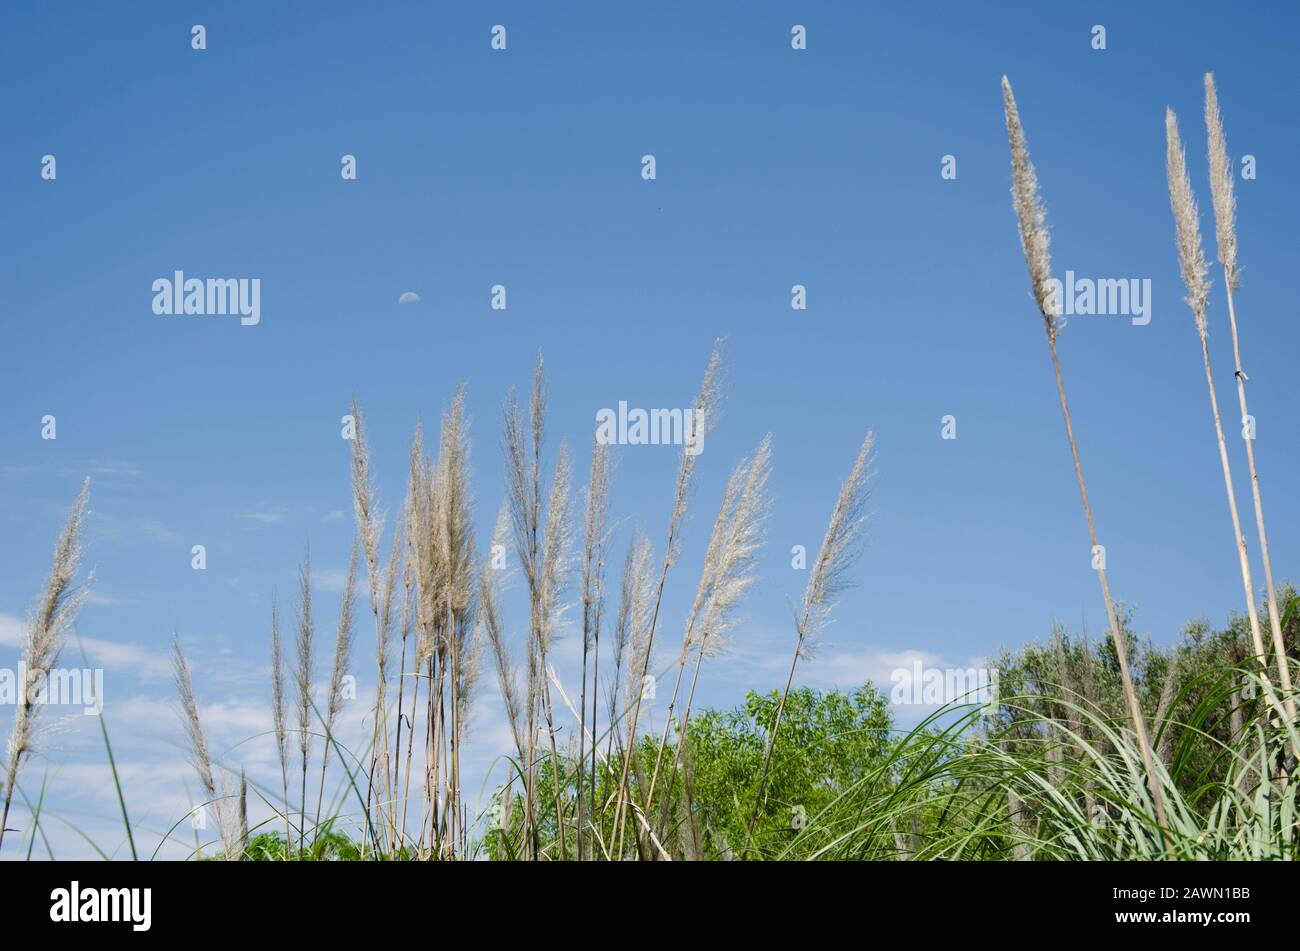 Paysage de la Réserve écologique de Costanera sur : arbustes, herbe de pamppas, cortaderia selloana, et un ciel bleu intense avec la lune Banque D'Images